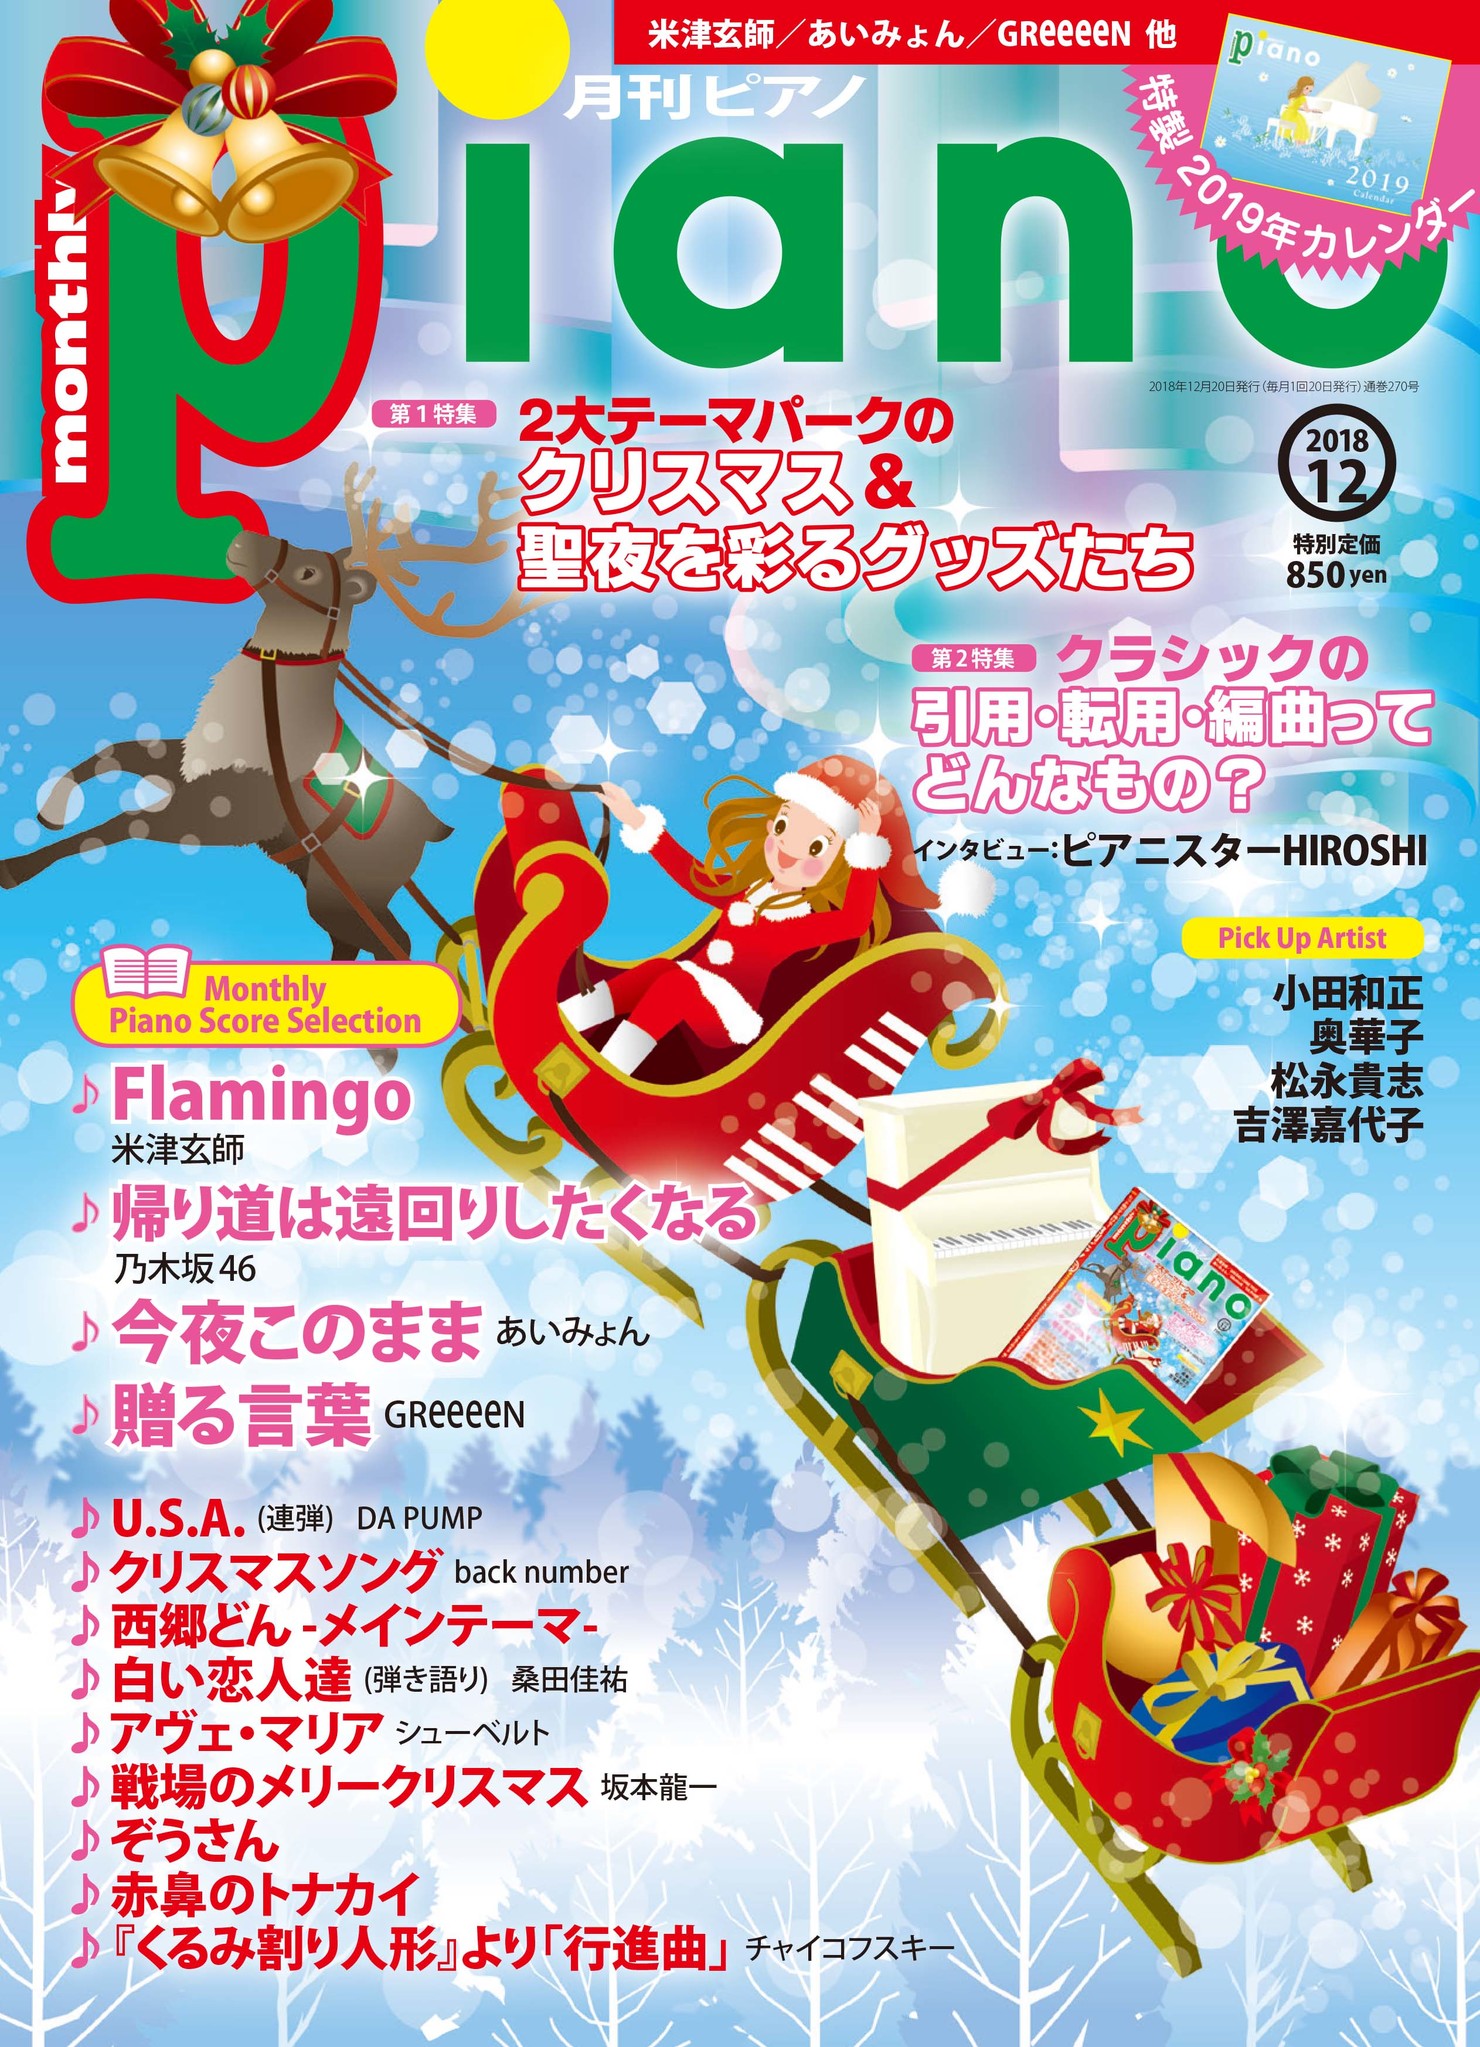 特製カレンダー付録のクリスマス特集号 月刊ピアノ12月号 11月日発売 ヤマハミュージックエンタテインメントホールディングスのプレスリリース